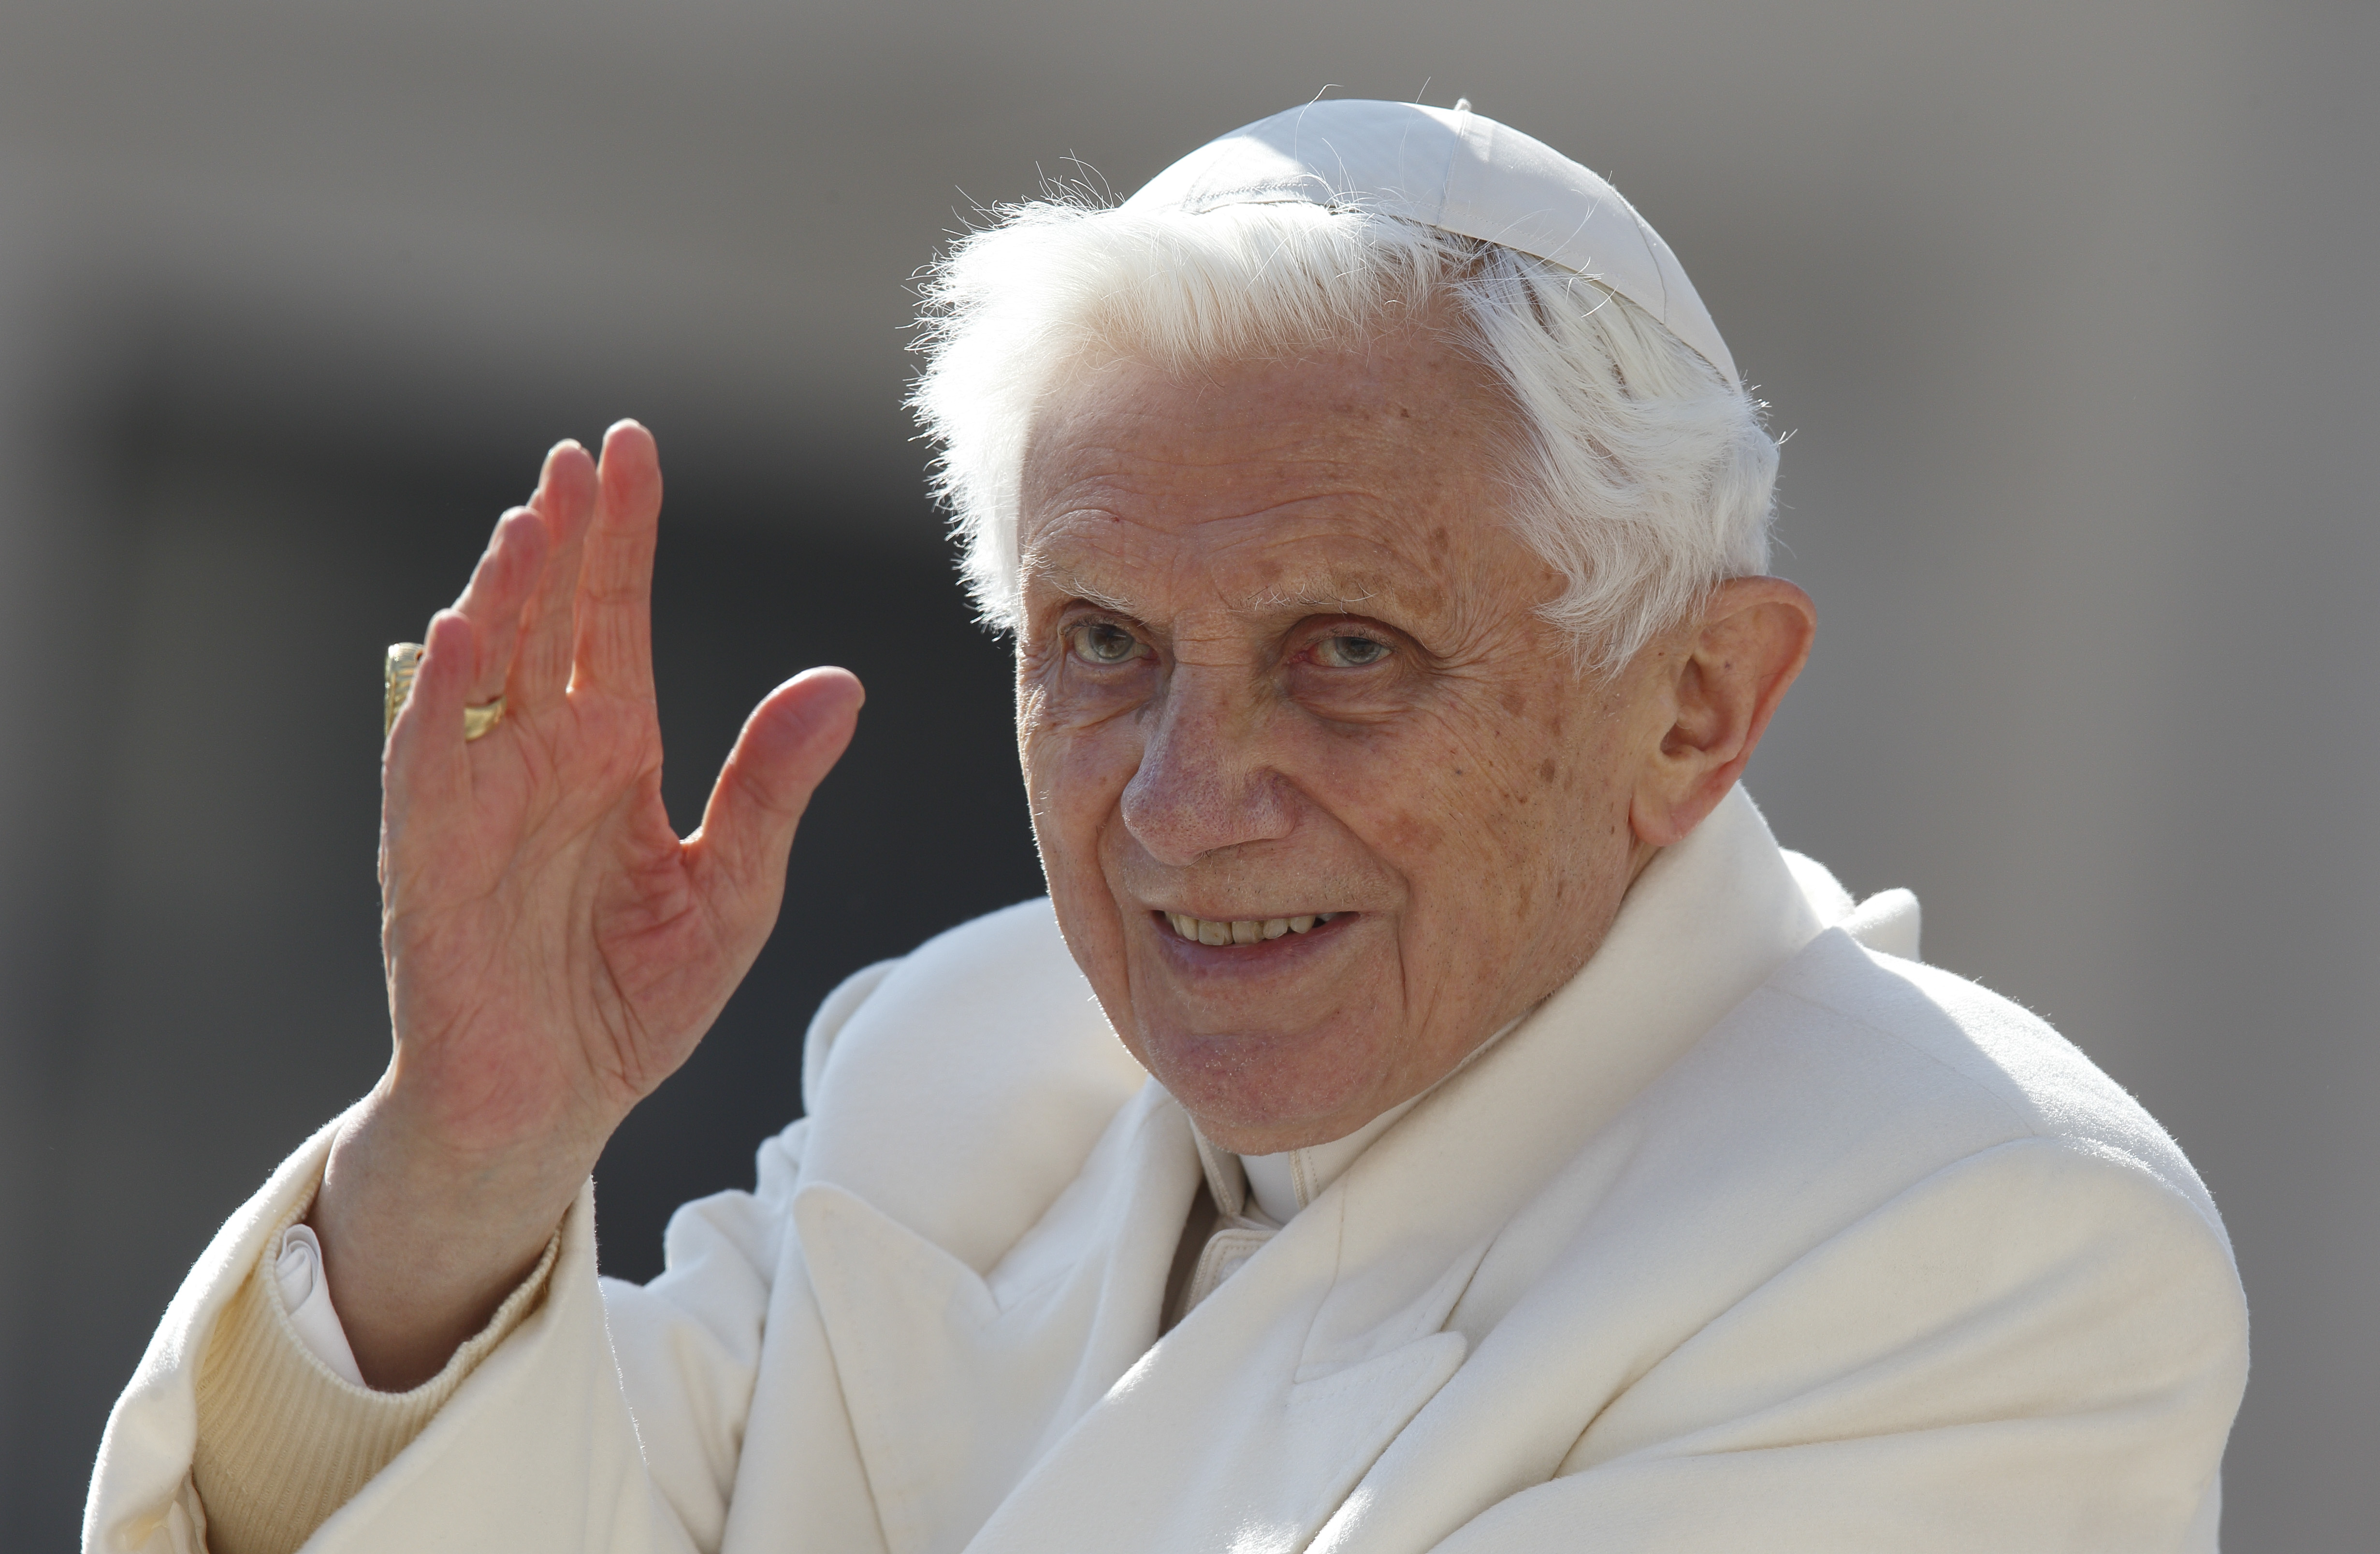 Pope Francis praises Pope Emeritus Benedict as defender of family